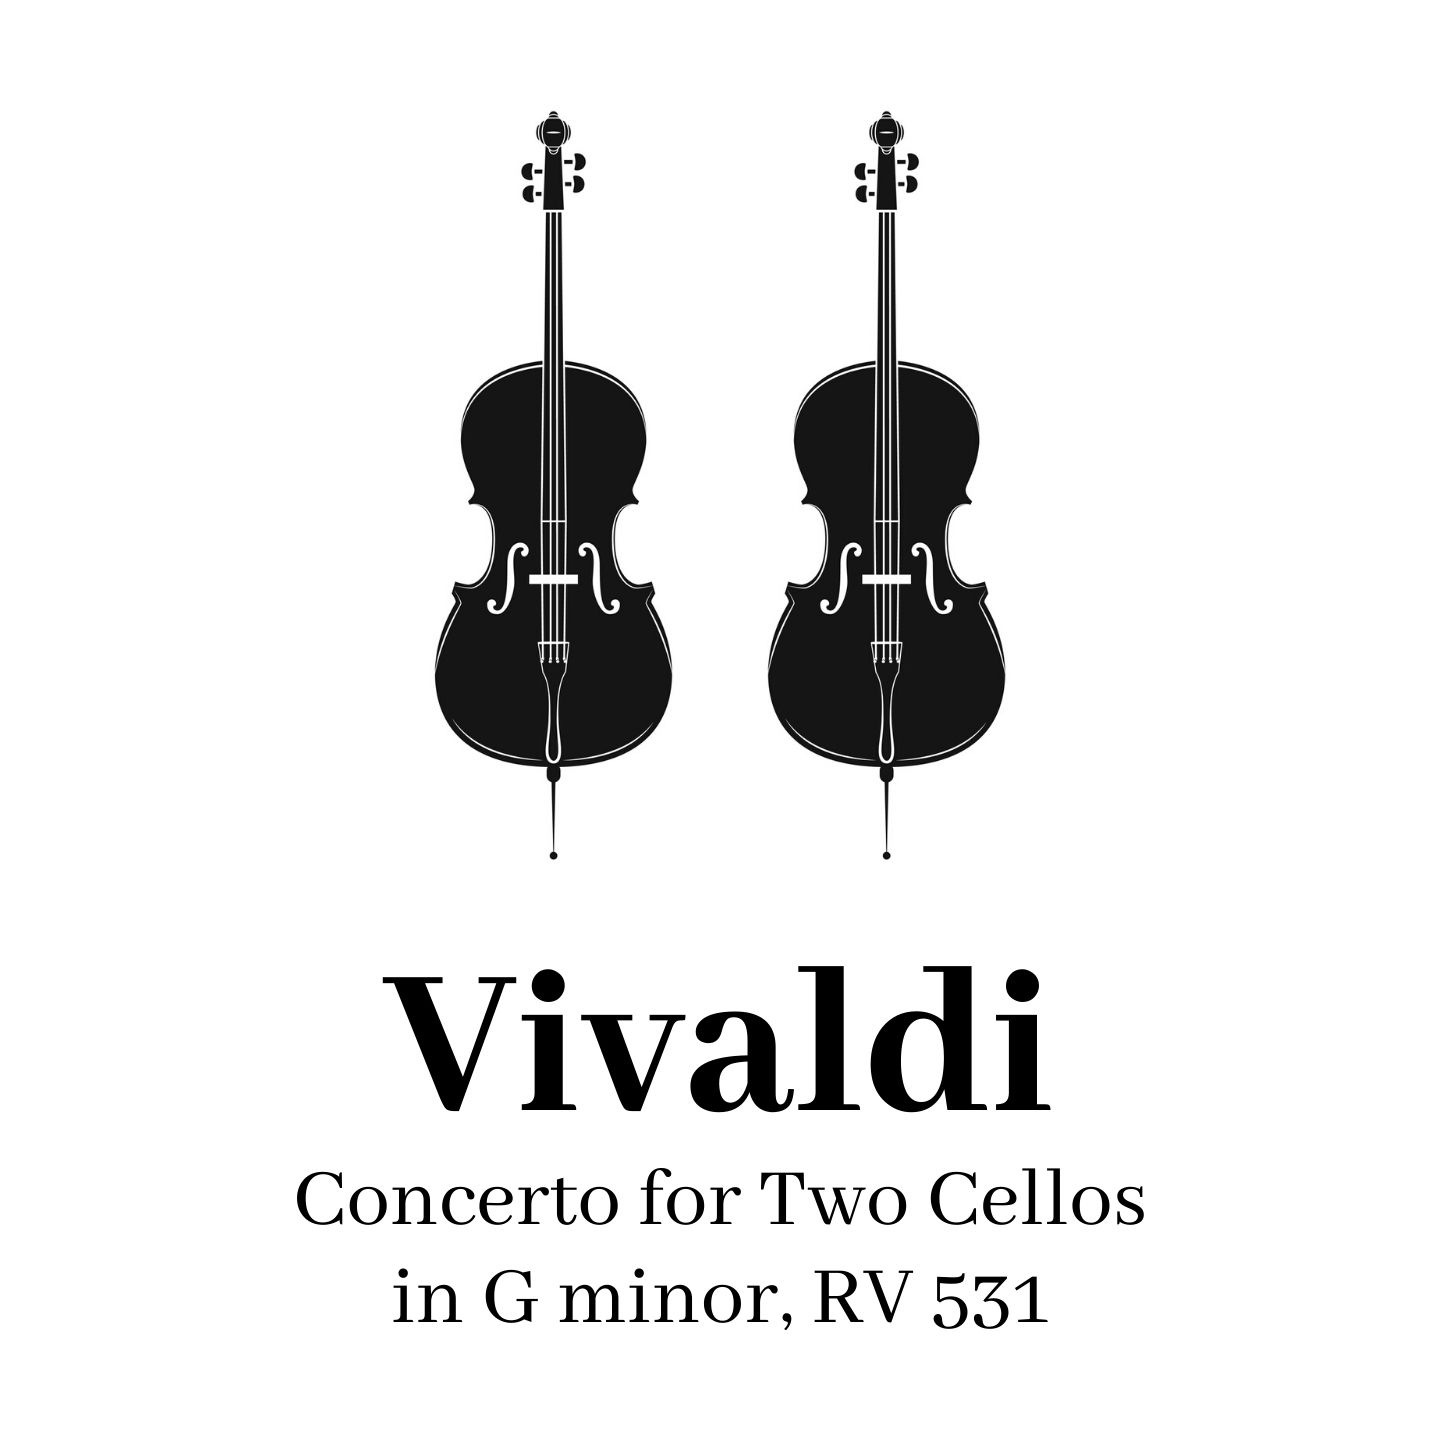 Vivaldi: Concerto for Two Cellos in G minor, RV 531